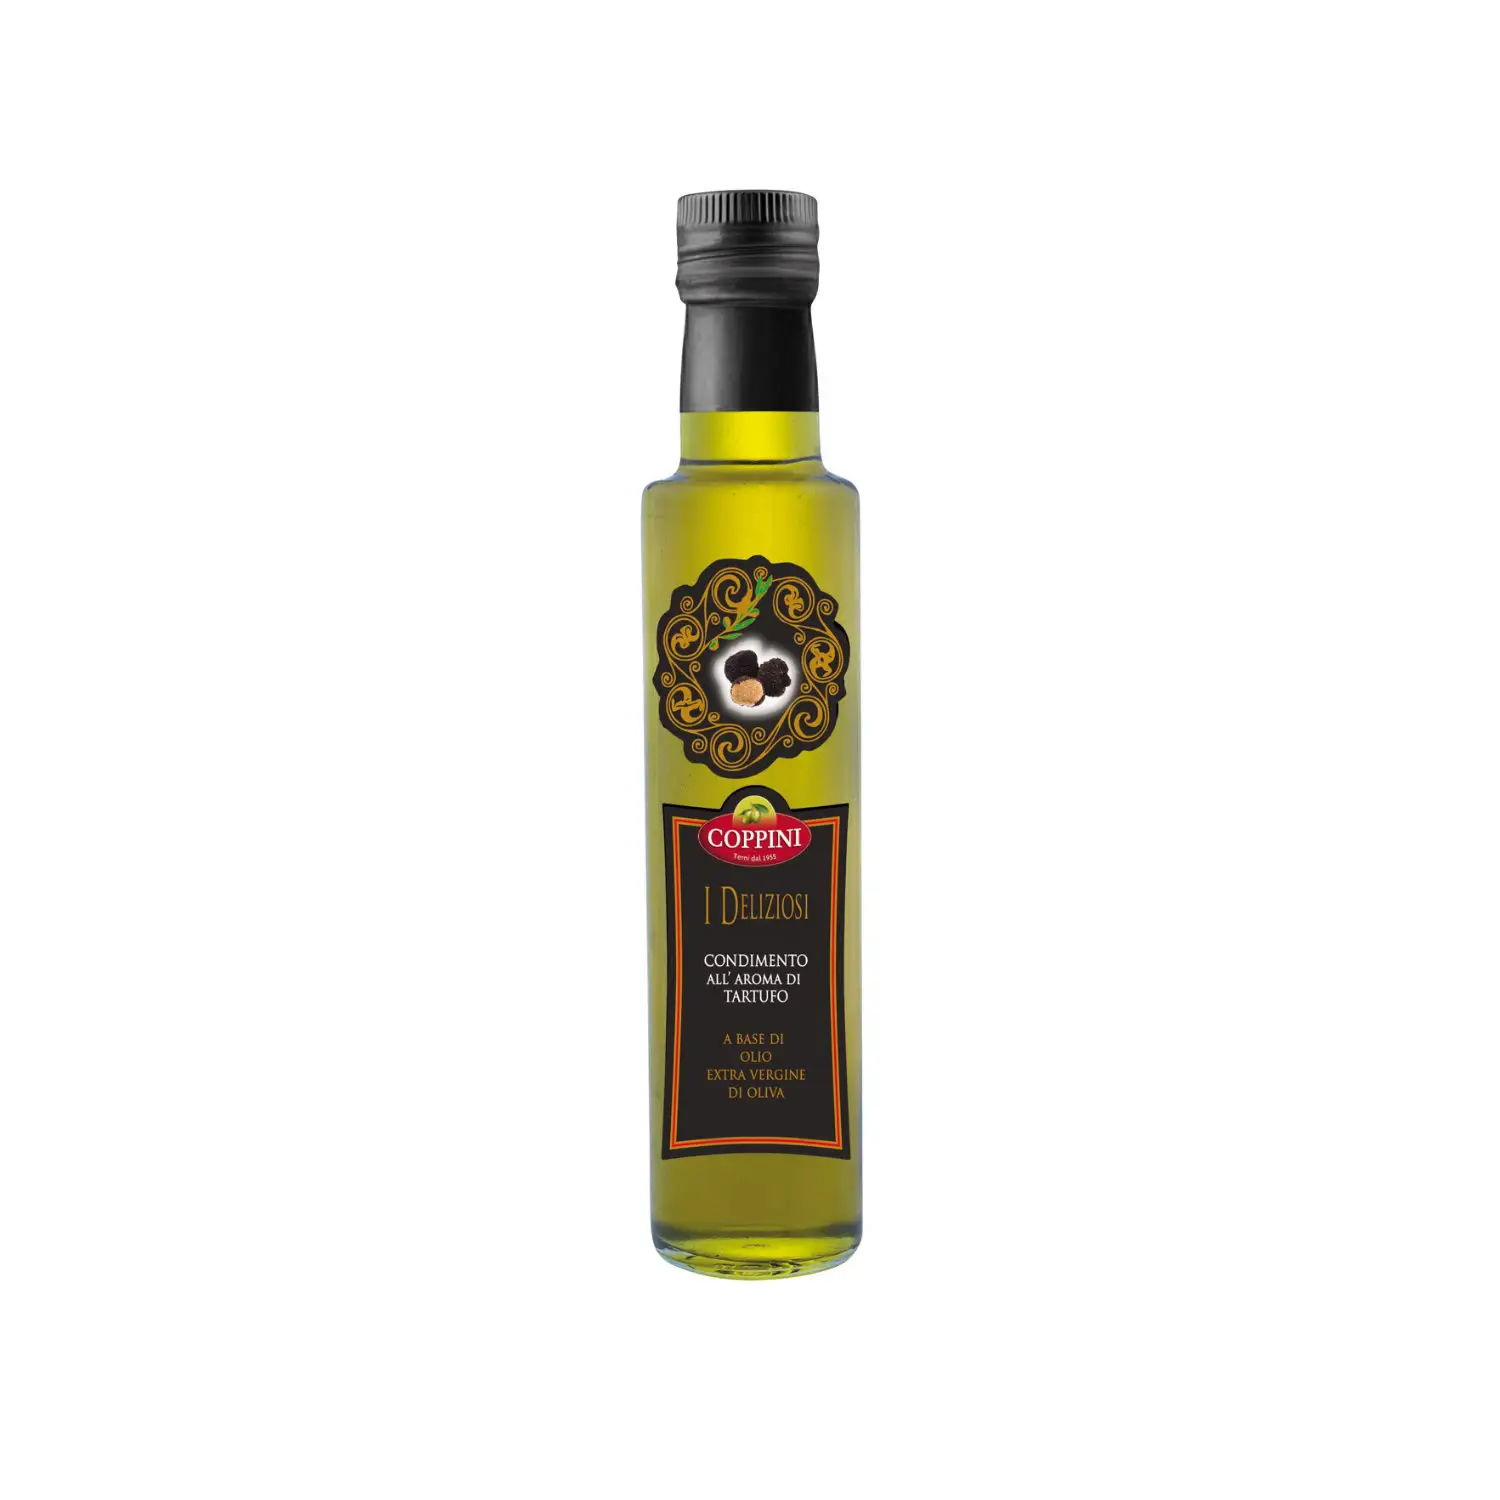 Качественное свежеароматное трюфельное масло, 0,25 л, бутылка для оливкового масла, Ода салатам и мясу